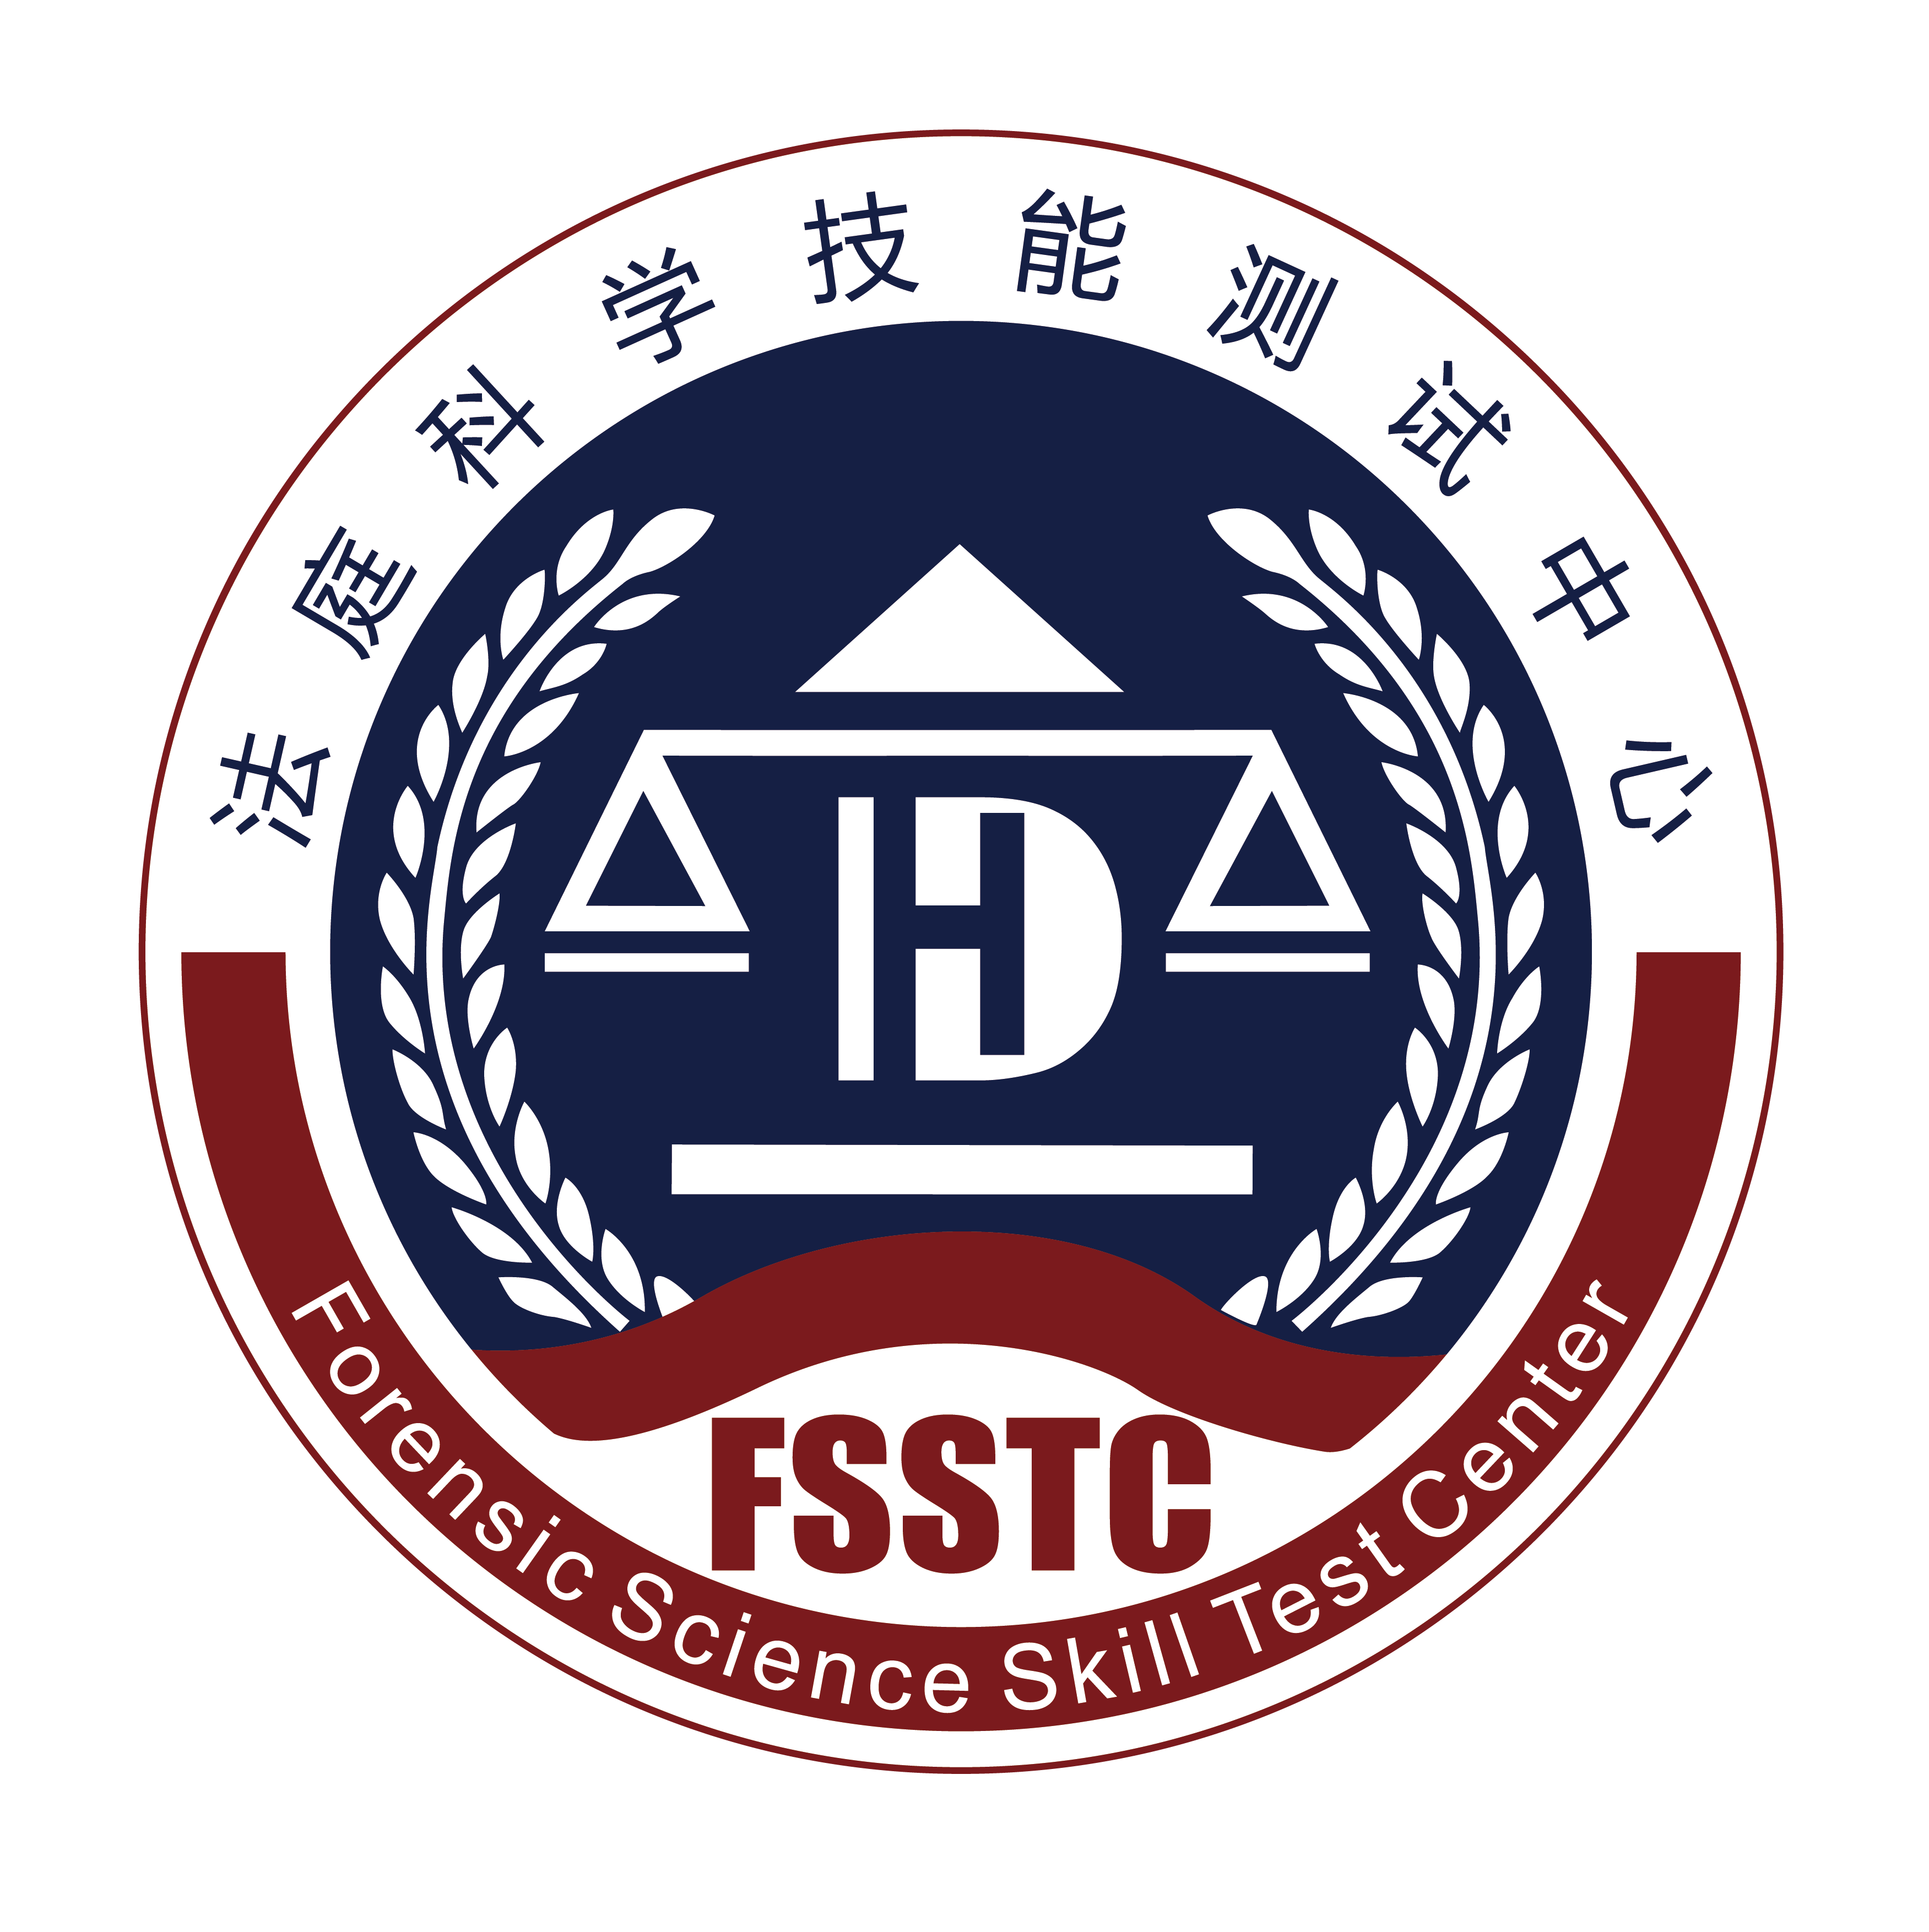 弘德网法庭科学技能测试中心(FSSTC)